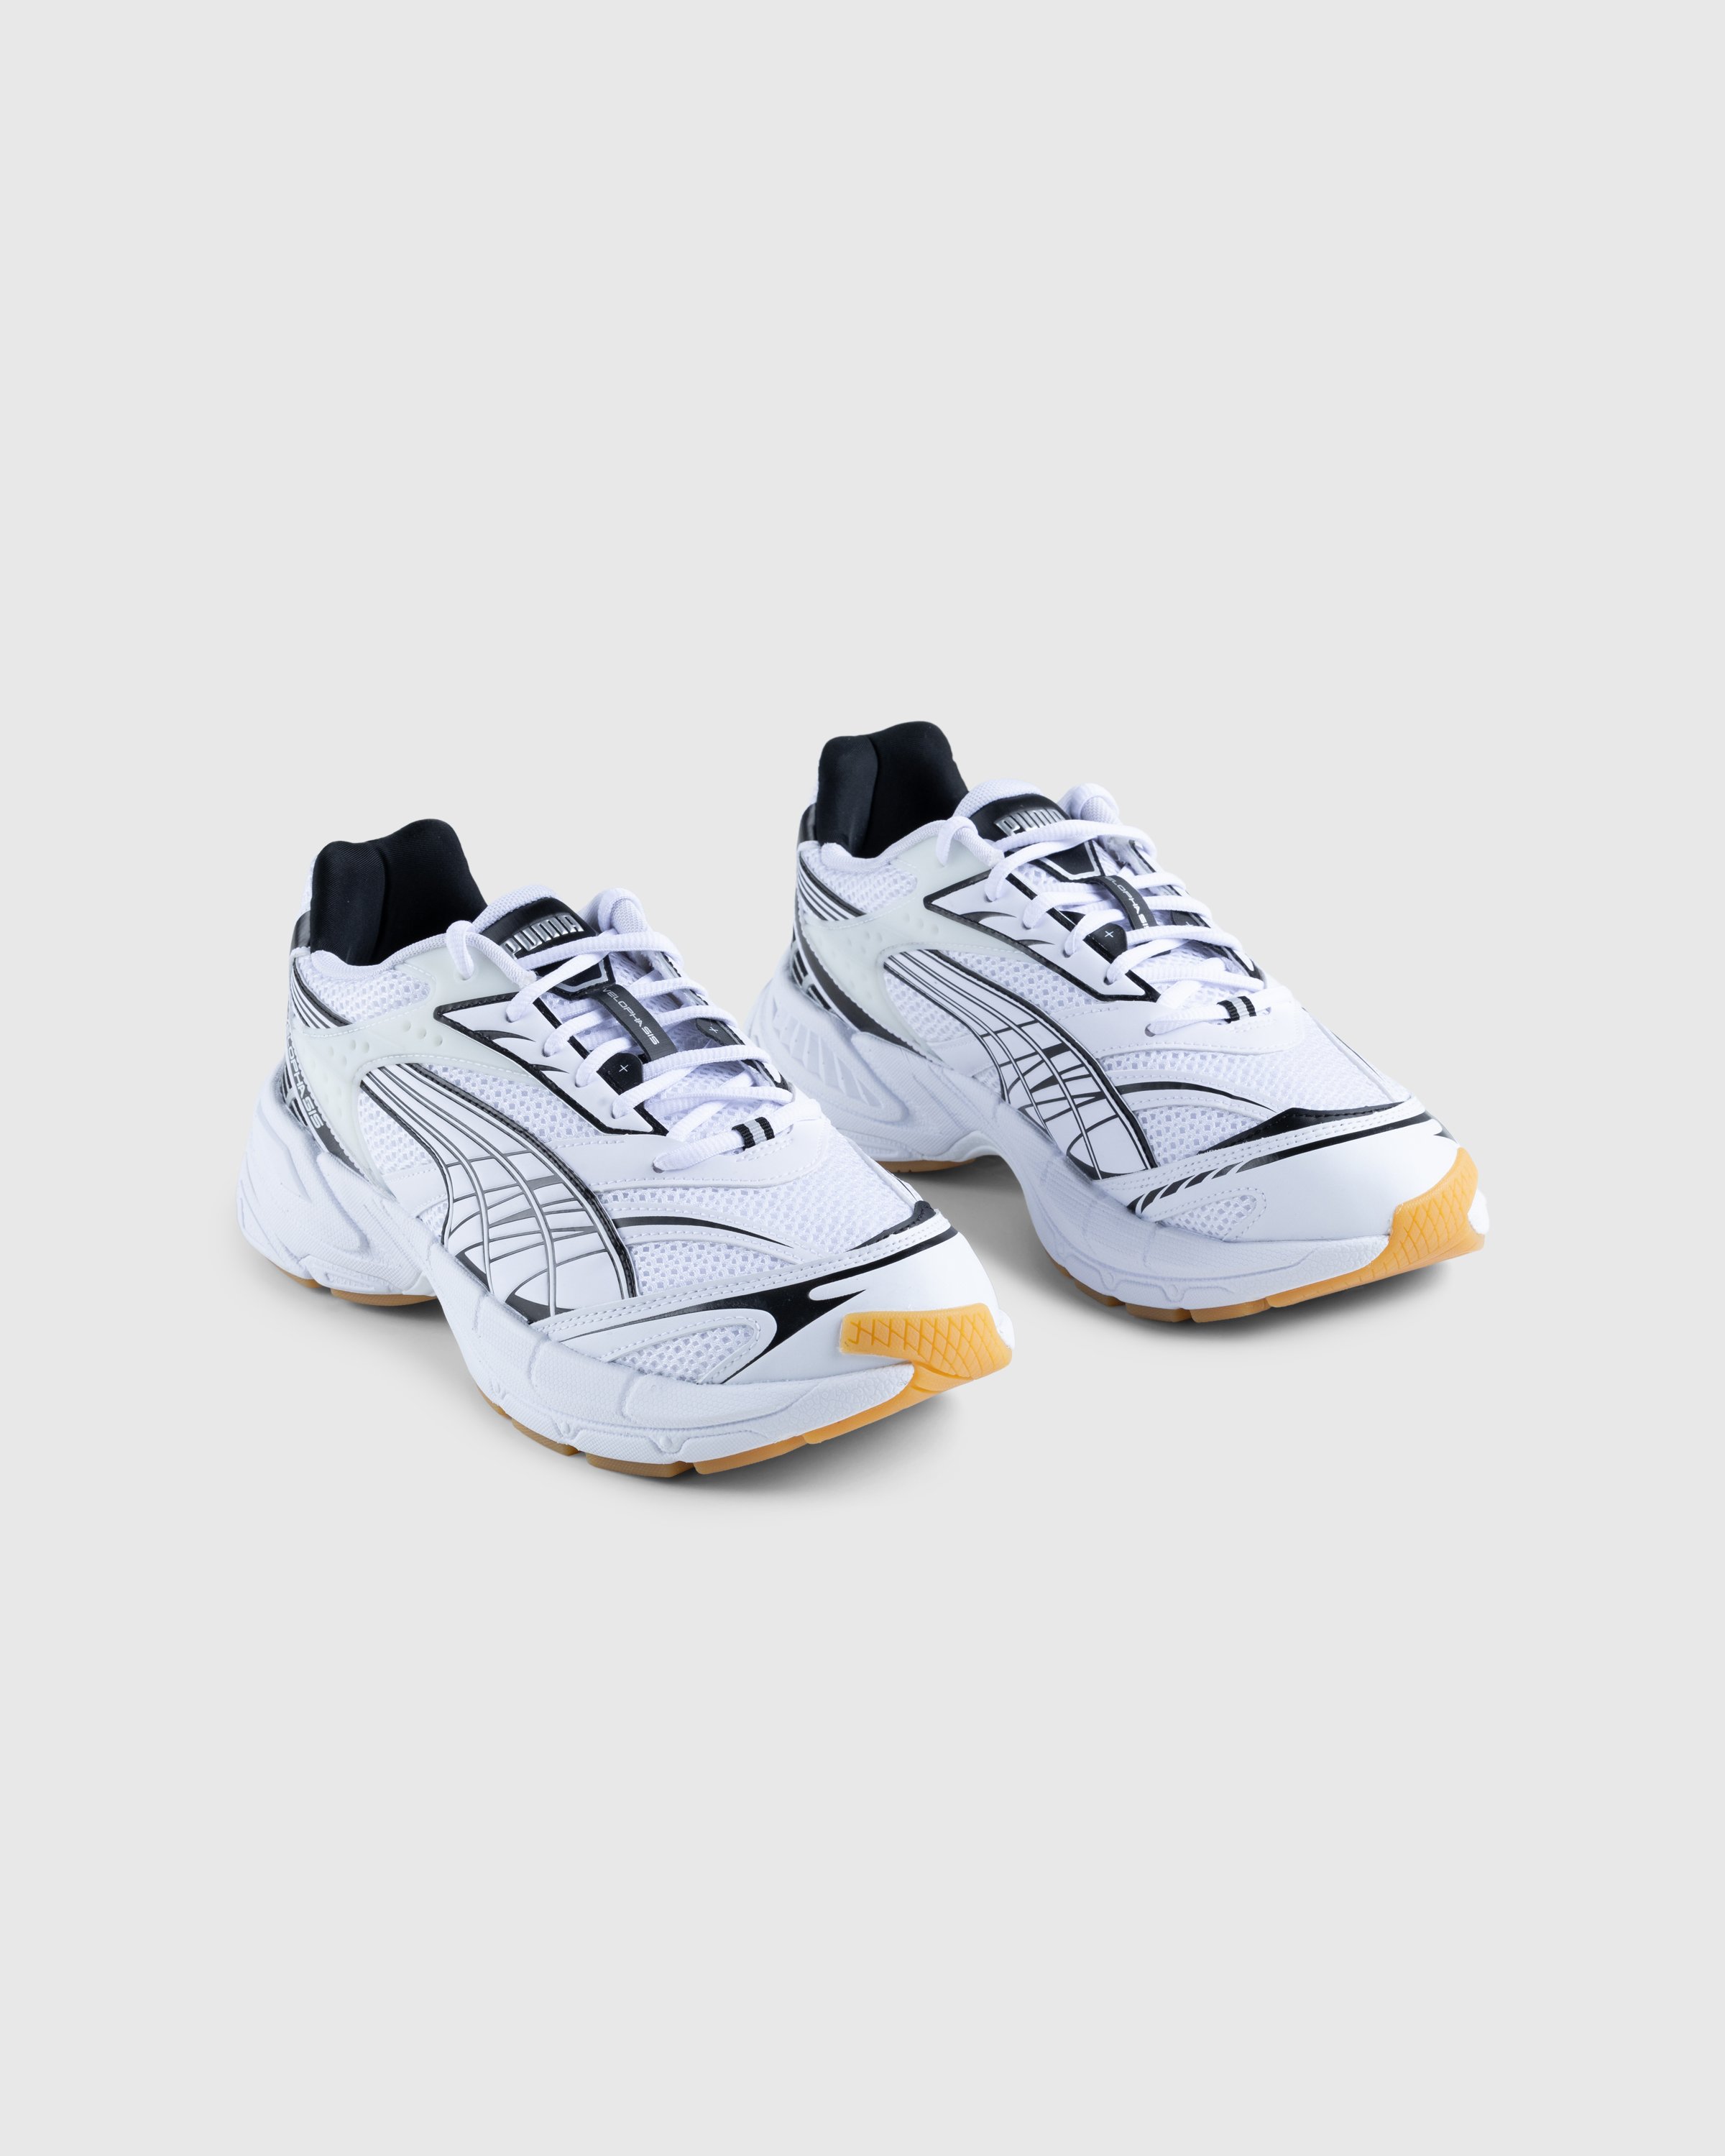 Puma - Velophasis Technisch White - Footwear - White - Image 3